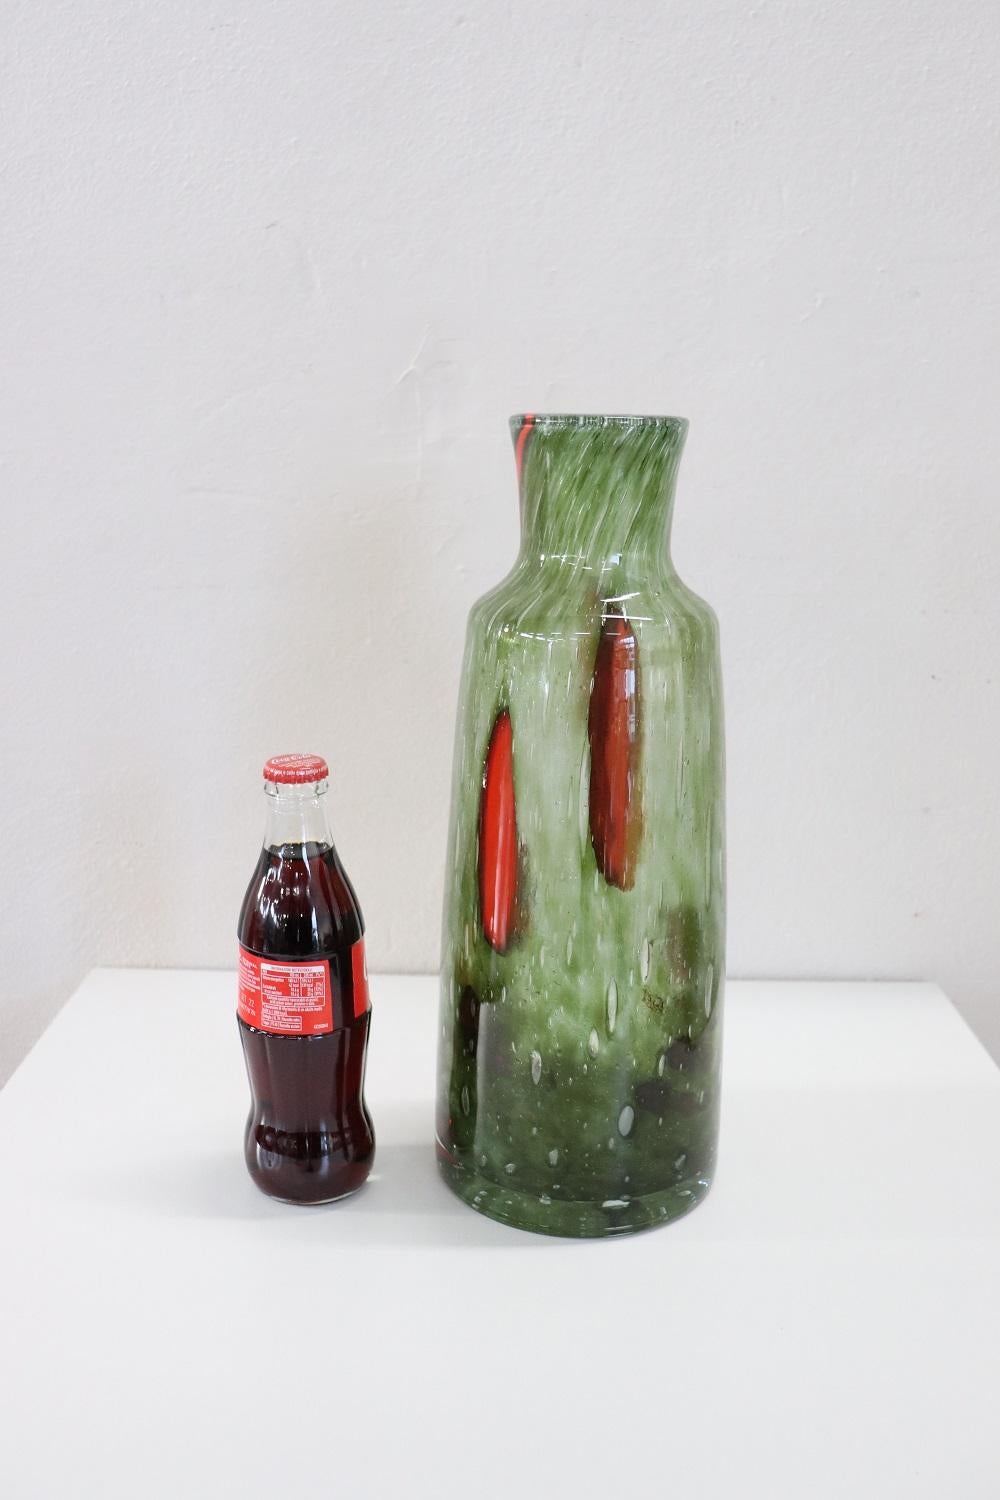 Vase aus raffiniertem Kunstglas, Italien, Produktion 1960er Jahre Murano. Nicht unterzeichnet. Hochwertiges, mundgeblasenes Glas in Grüntönen mit roten Verzierungen. Perfekte Bedingungen!